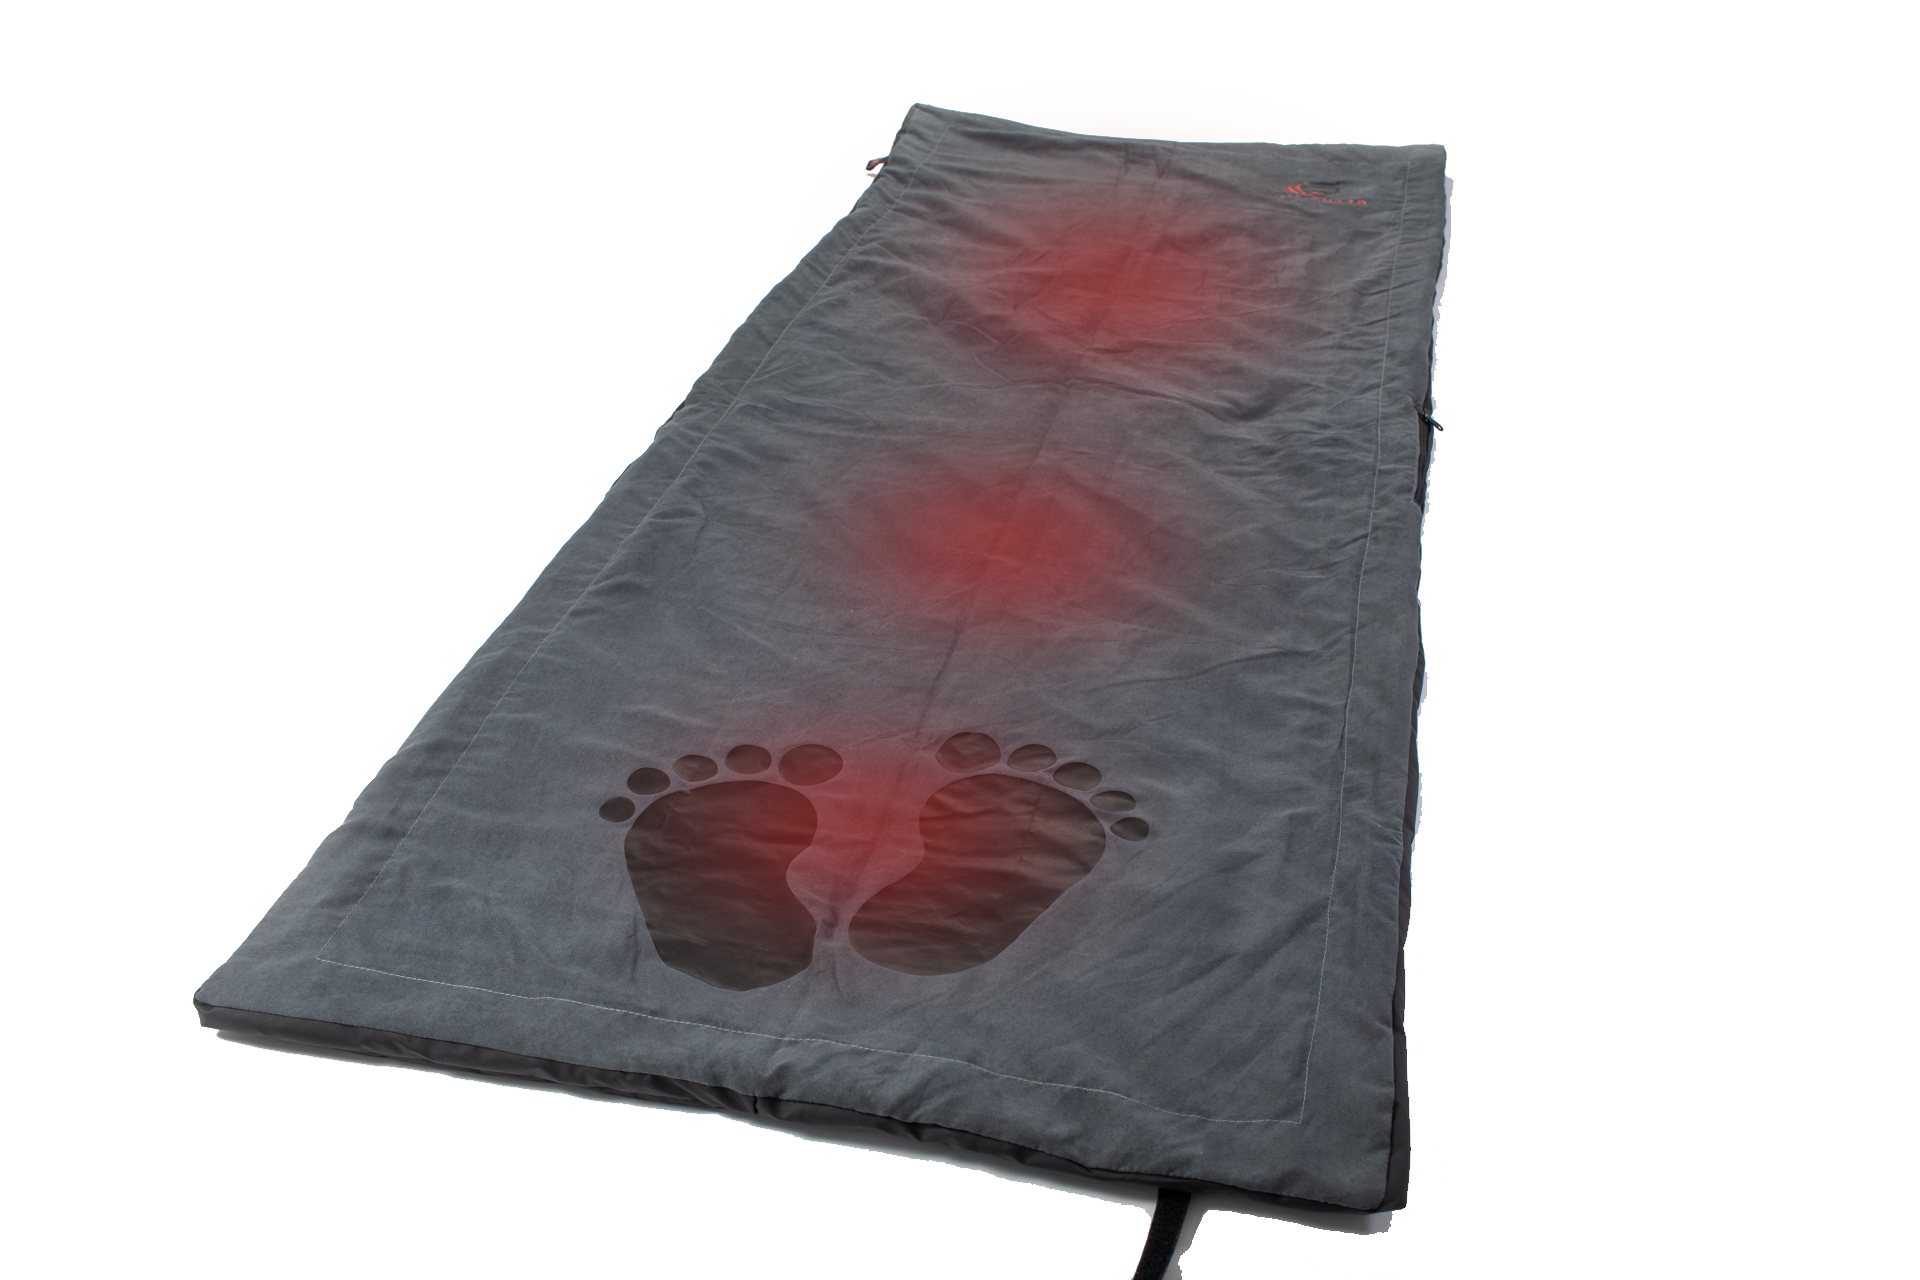 Outchair Comforter - die Heizdecke für dein Dachzelt oder Zelt, 209,90 €